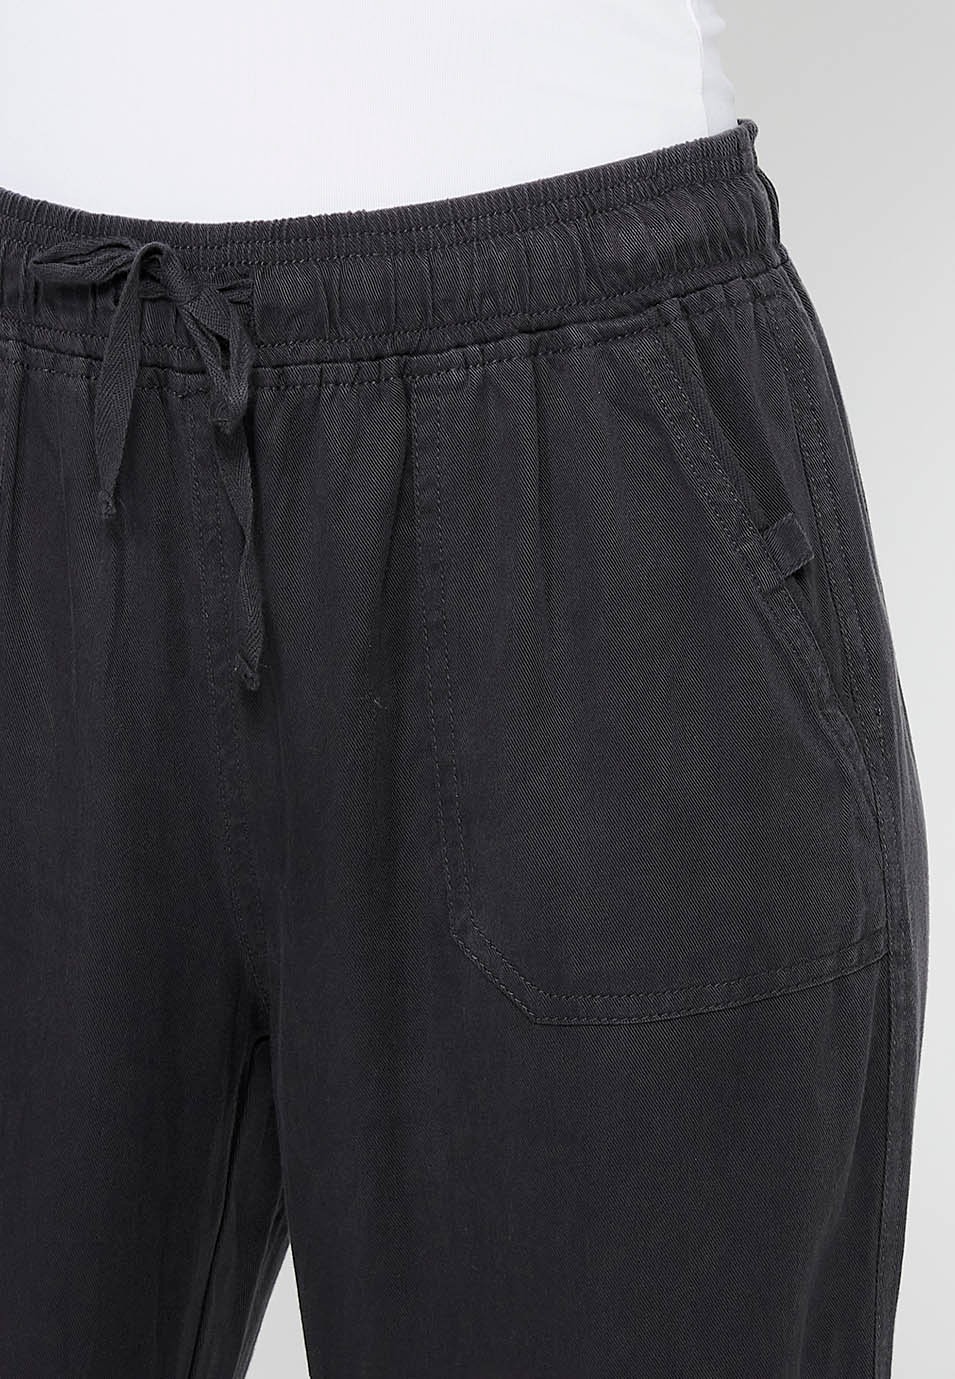 Pantalón largo jogger con Acabado rizado y Cintura engomada con Cuatro bolsillos, dos traseros con solapa de Color Negro para Mujer 5